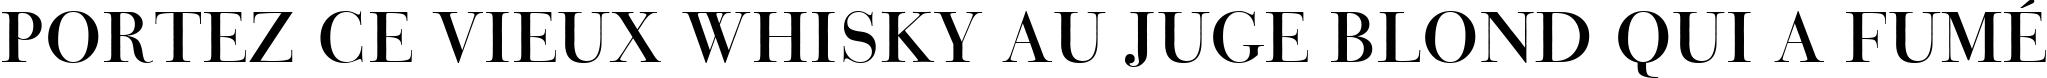 Пример написания шрифтом Bauer Bodoni Titling BT текста на французском